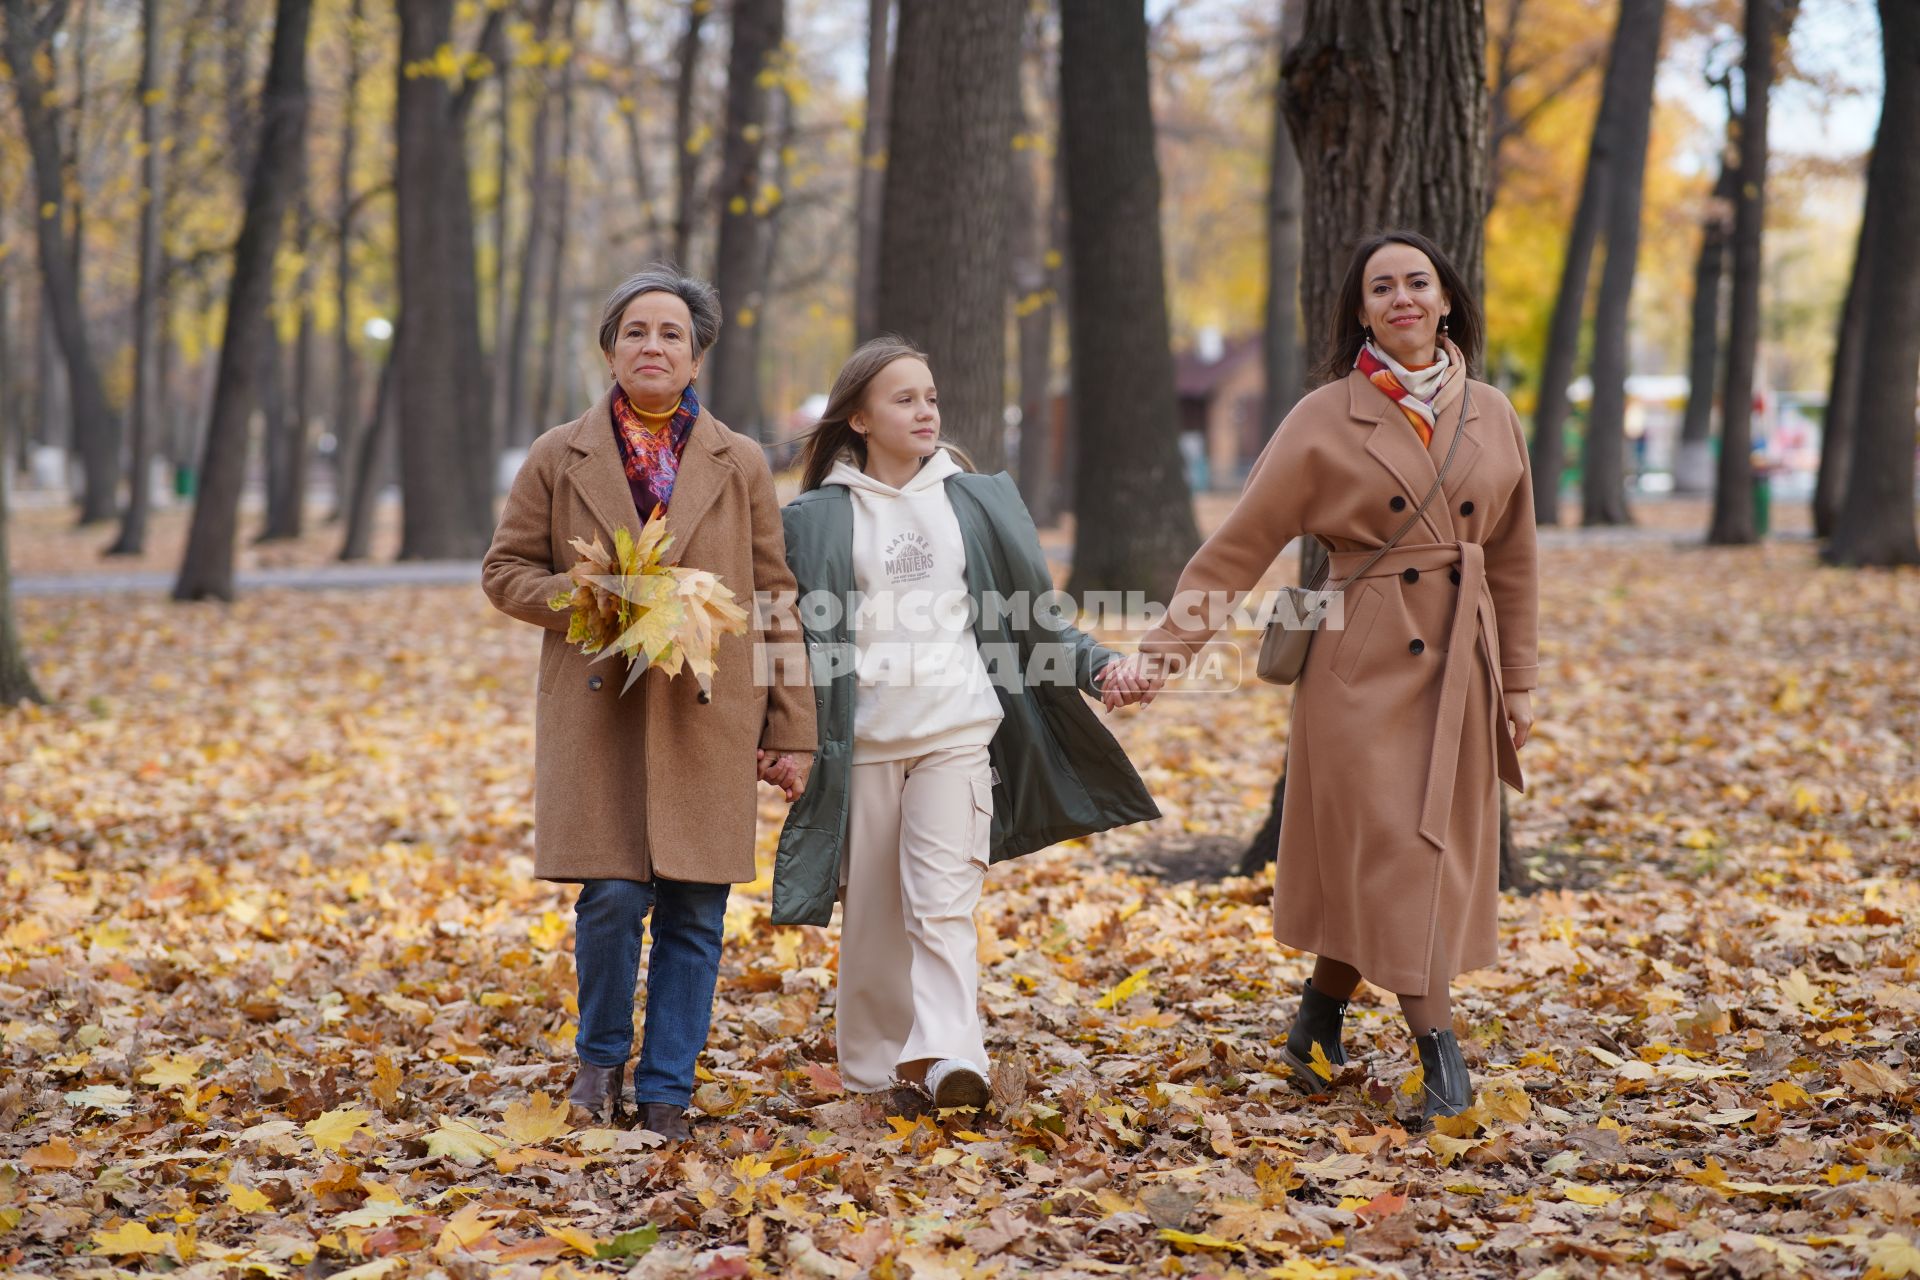 Самара. Женщины с девочкой гуляют в парке.